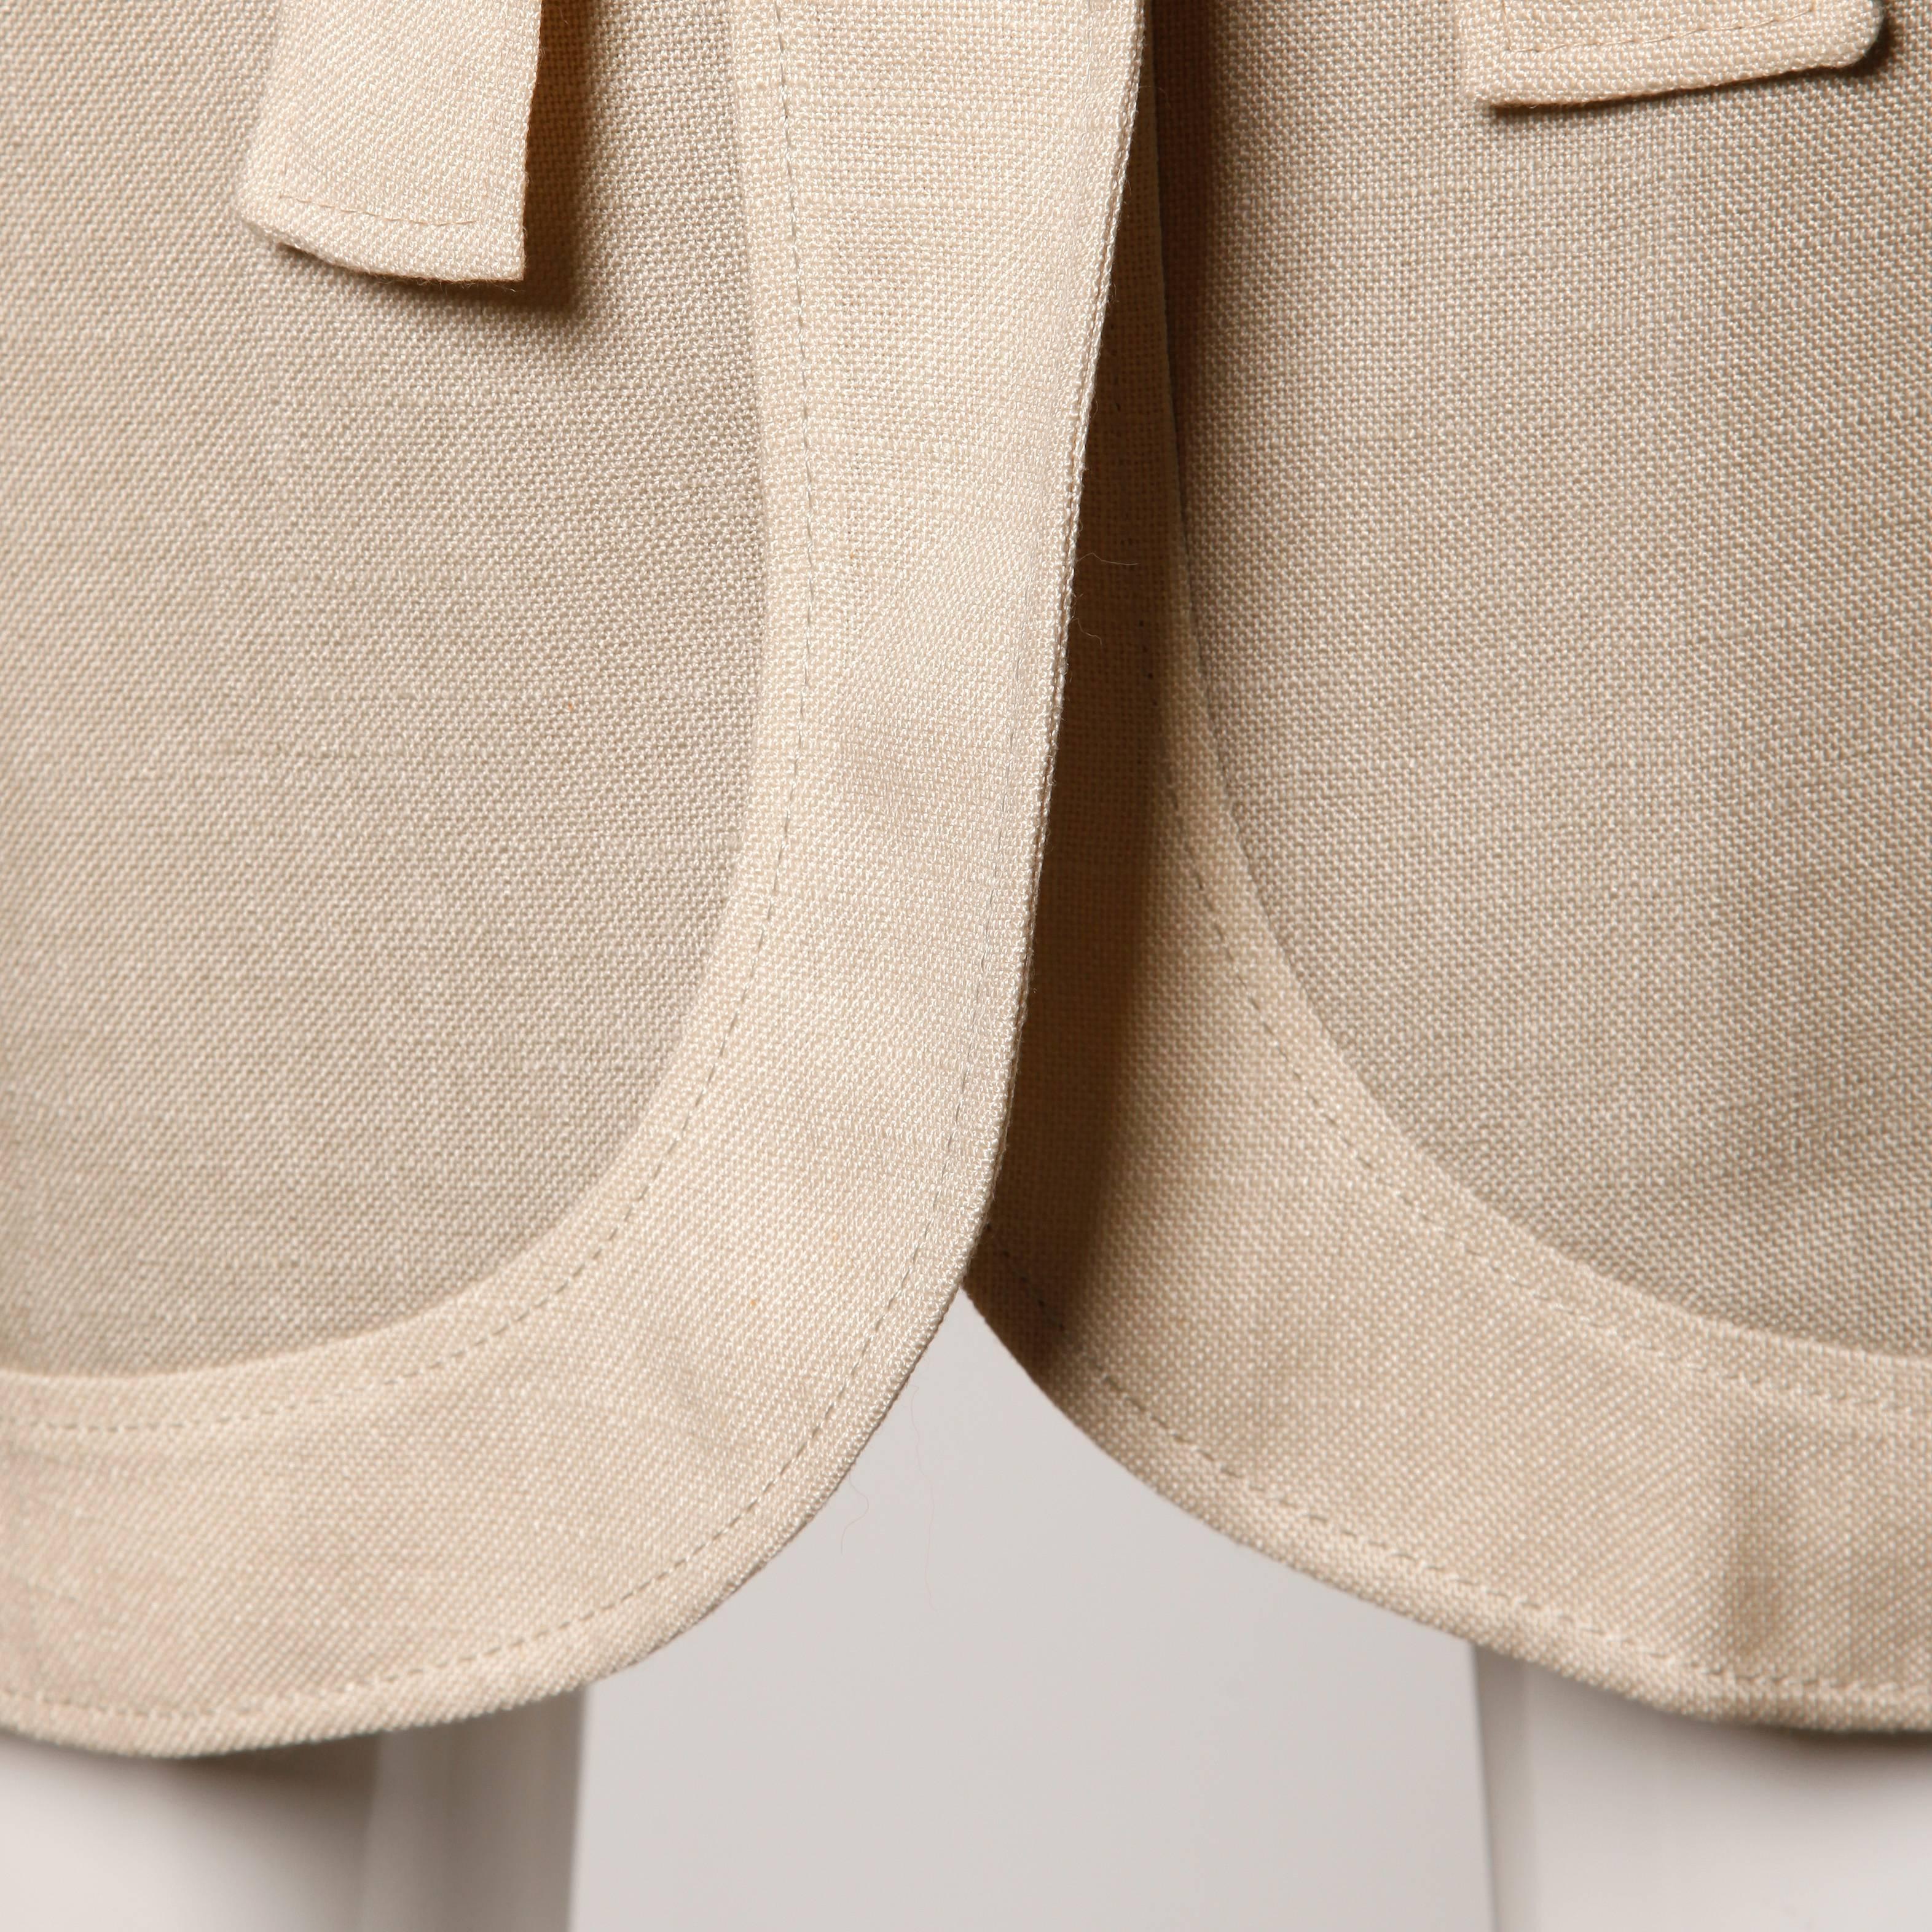 Women's Don Simonelli Vintage Neutral Minimalist Linen Coat and Sash For Sale